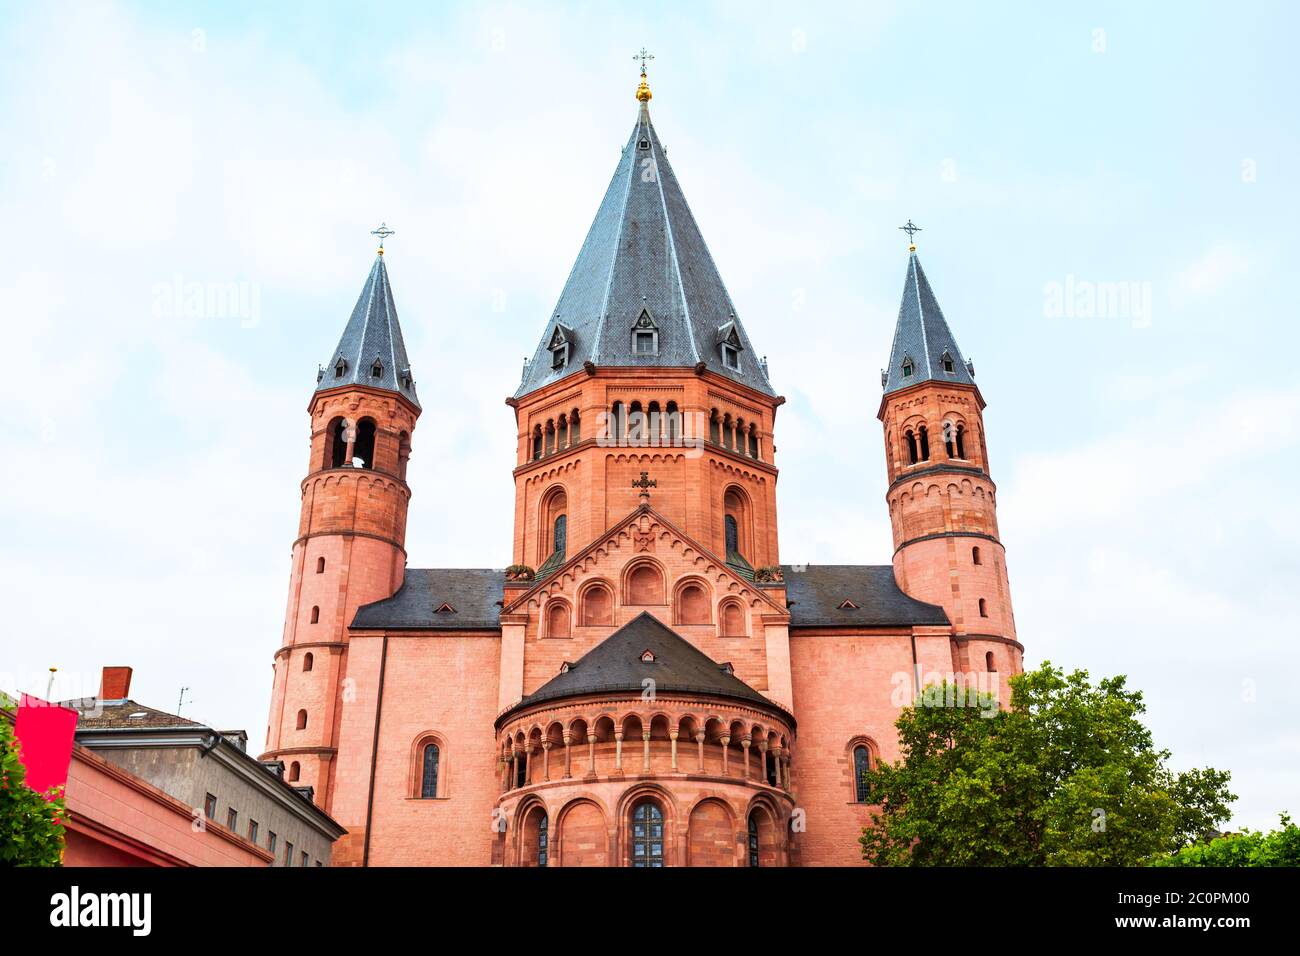 La Cattedrale di Magonza si trova nella piazza del mercato della città di Magonza in Germania Foto Stock